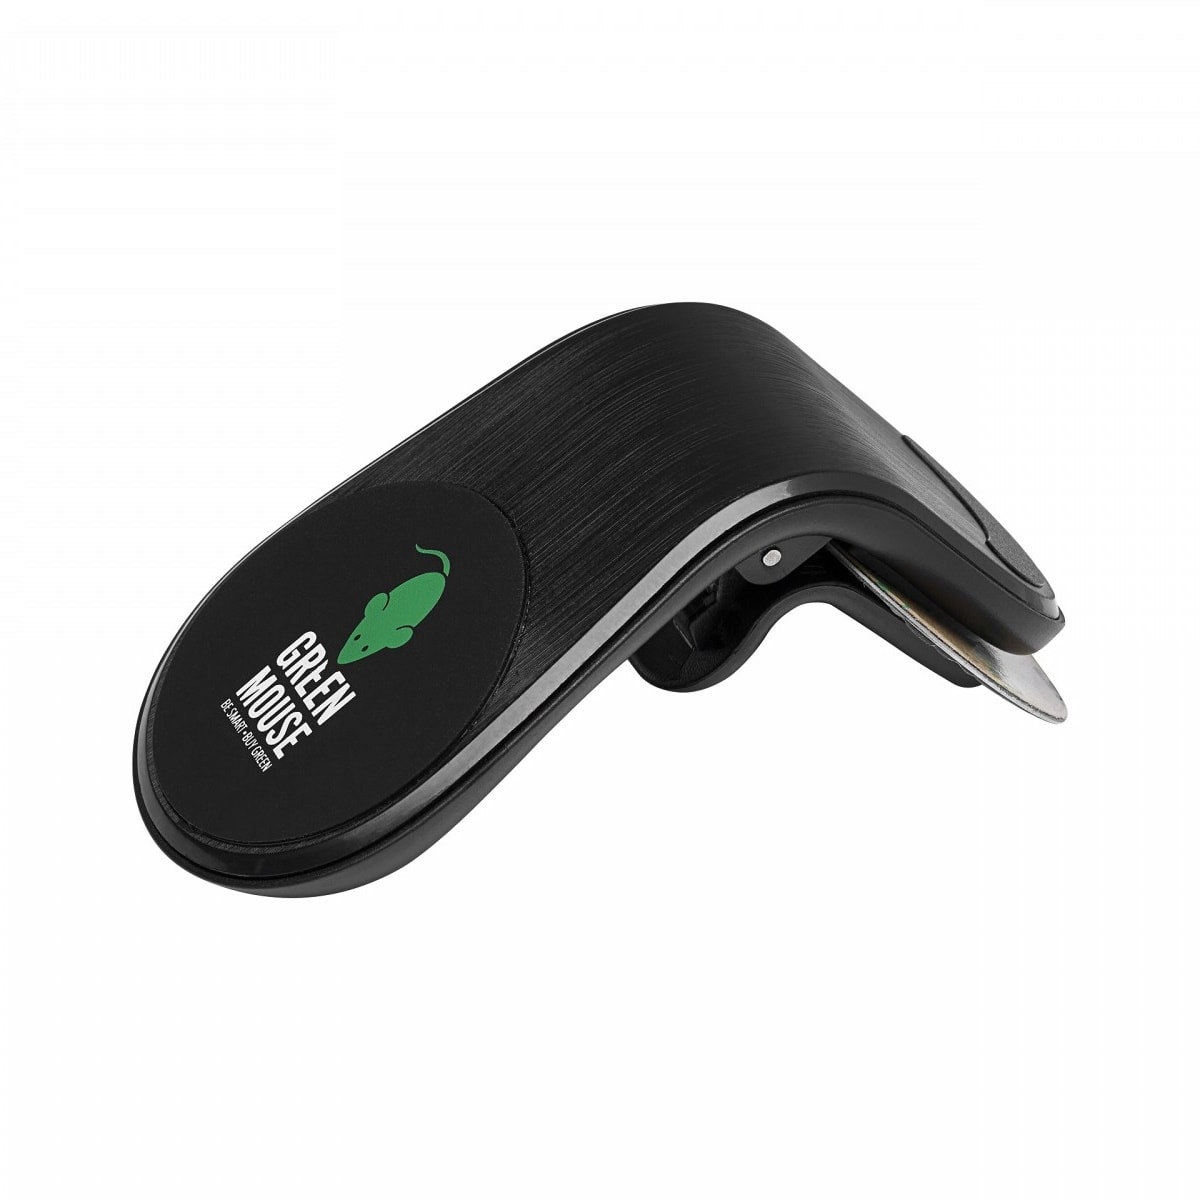 Μαγνητική βάση στήριξης Smartphone αεραγωγών αυτοκινήτου GreenMouse σε μαύρο χρώμα – 46956593